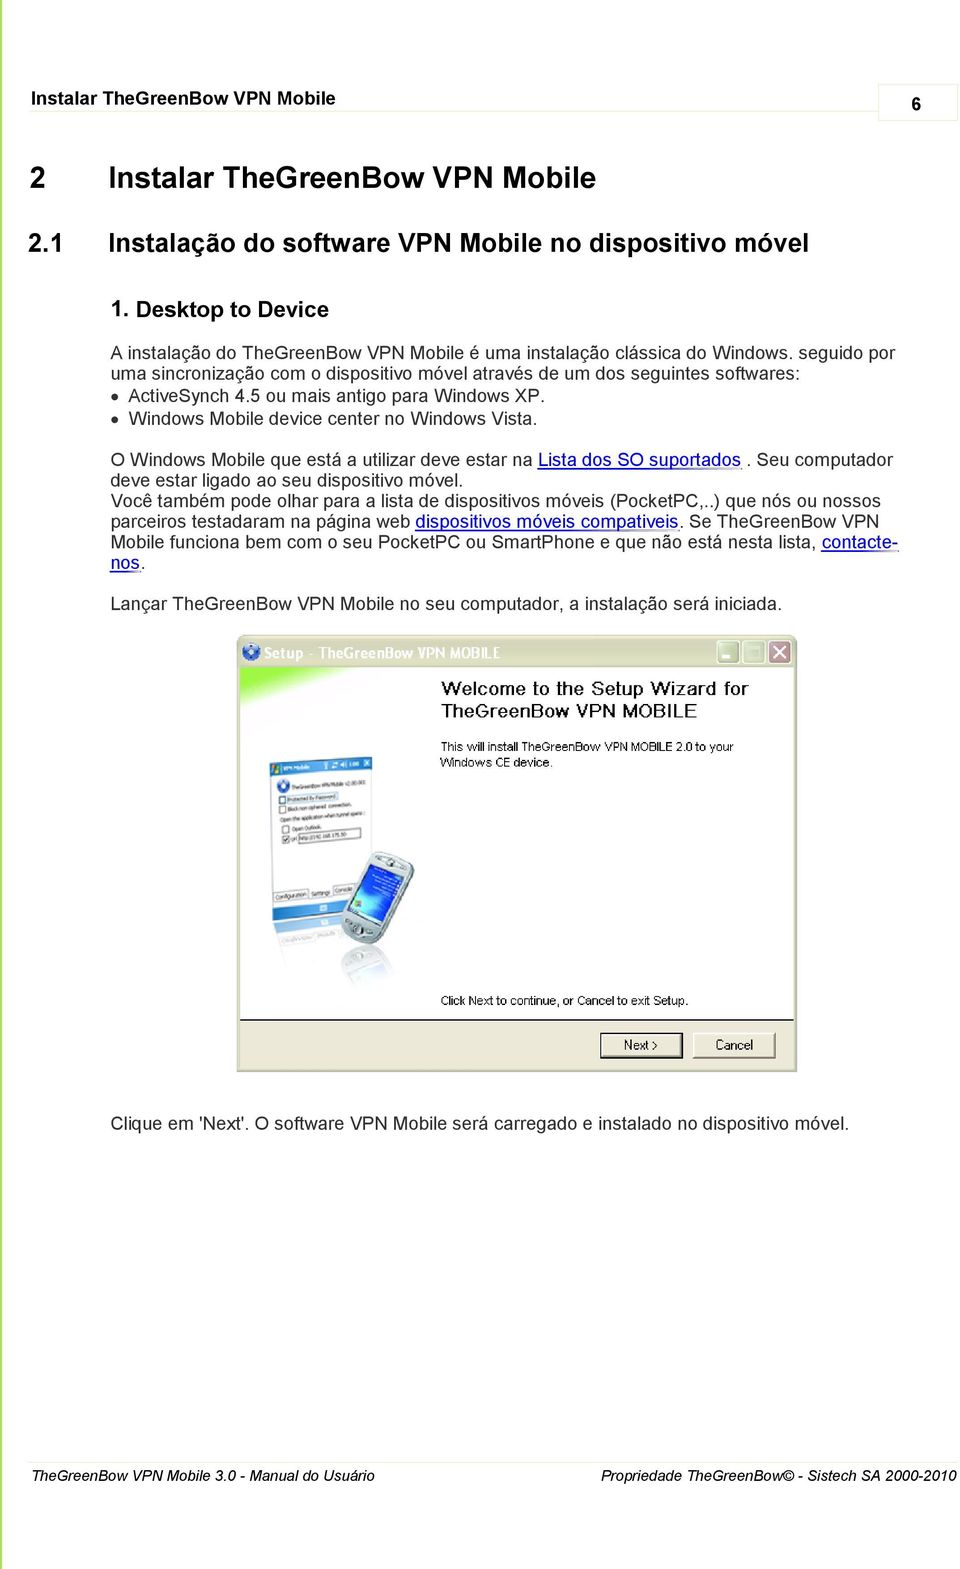 seguido por uma sincronização com o dispositivo móvel através de um dos seguintes softwares: ActiveSynch 4.5 ou mais antigo para Windows XP. Windows Mobile device center no Windows Vista.